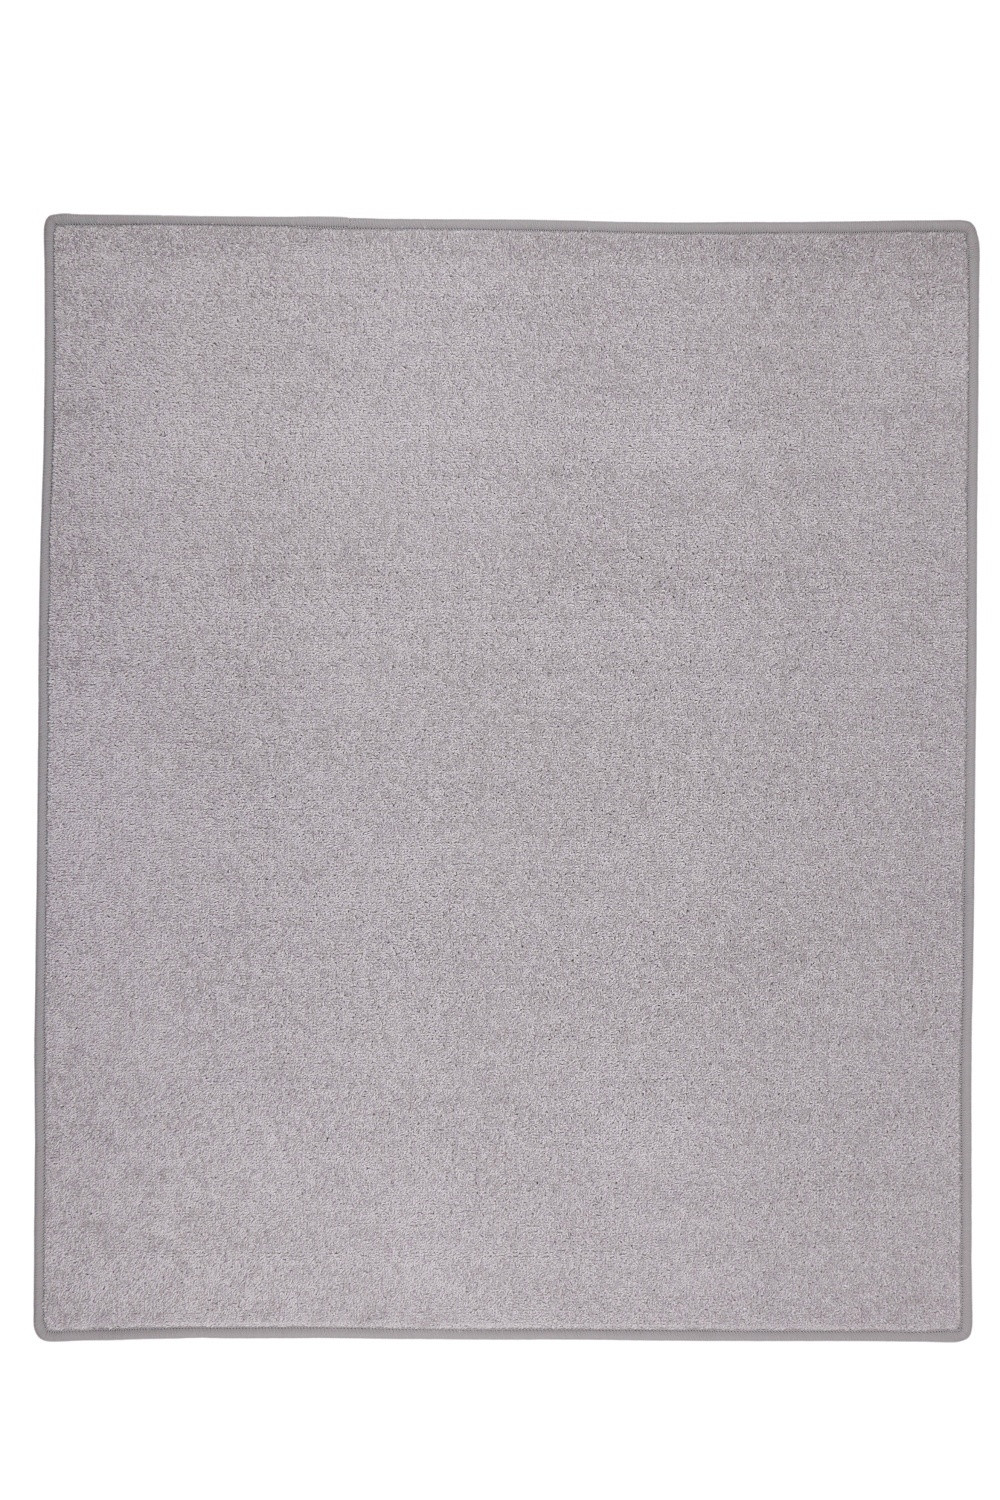 Kusový koberec Eton sivý 73 - 160x240 cm Vopi koberce 